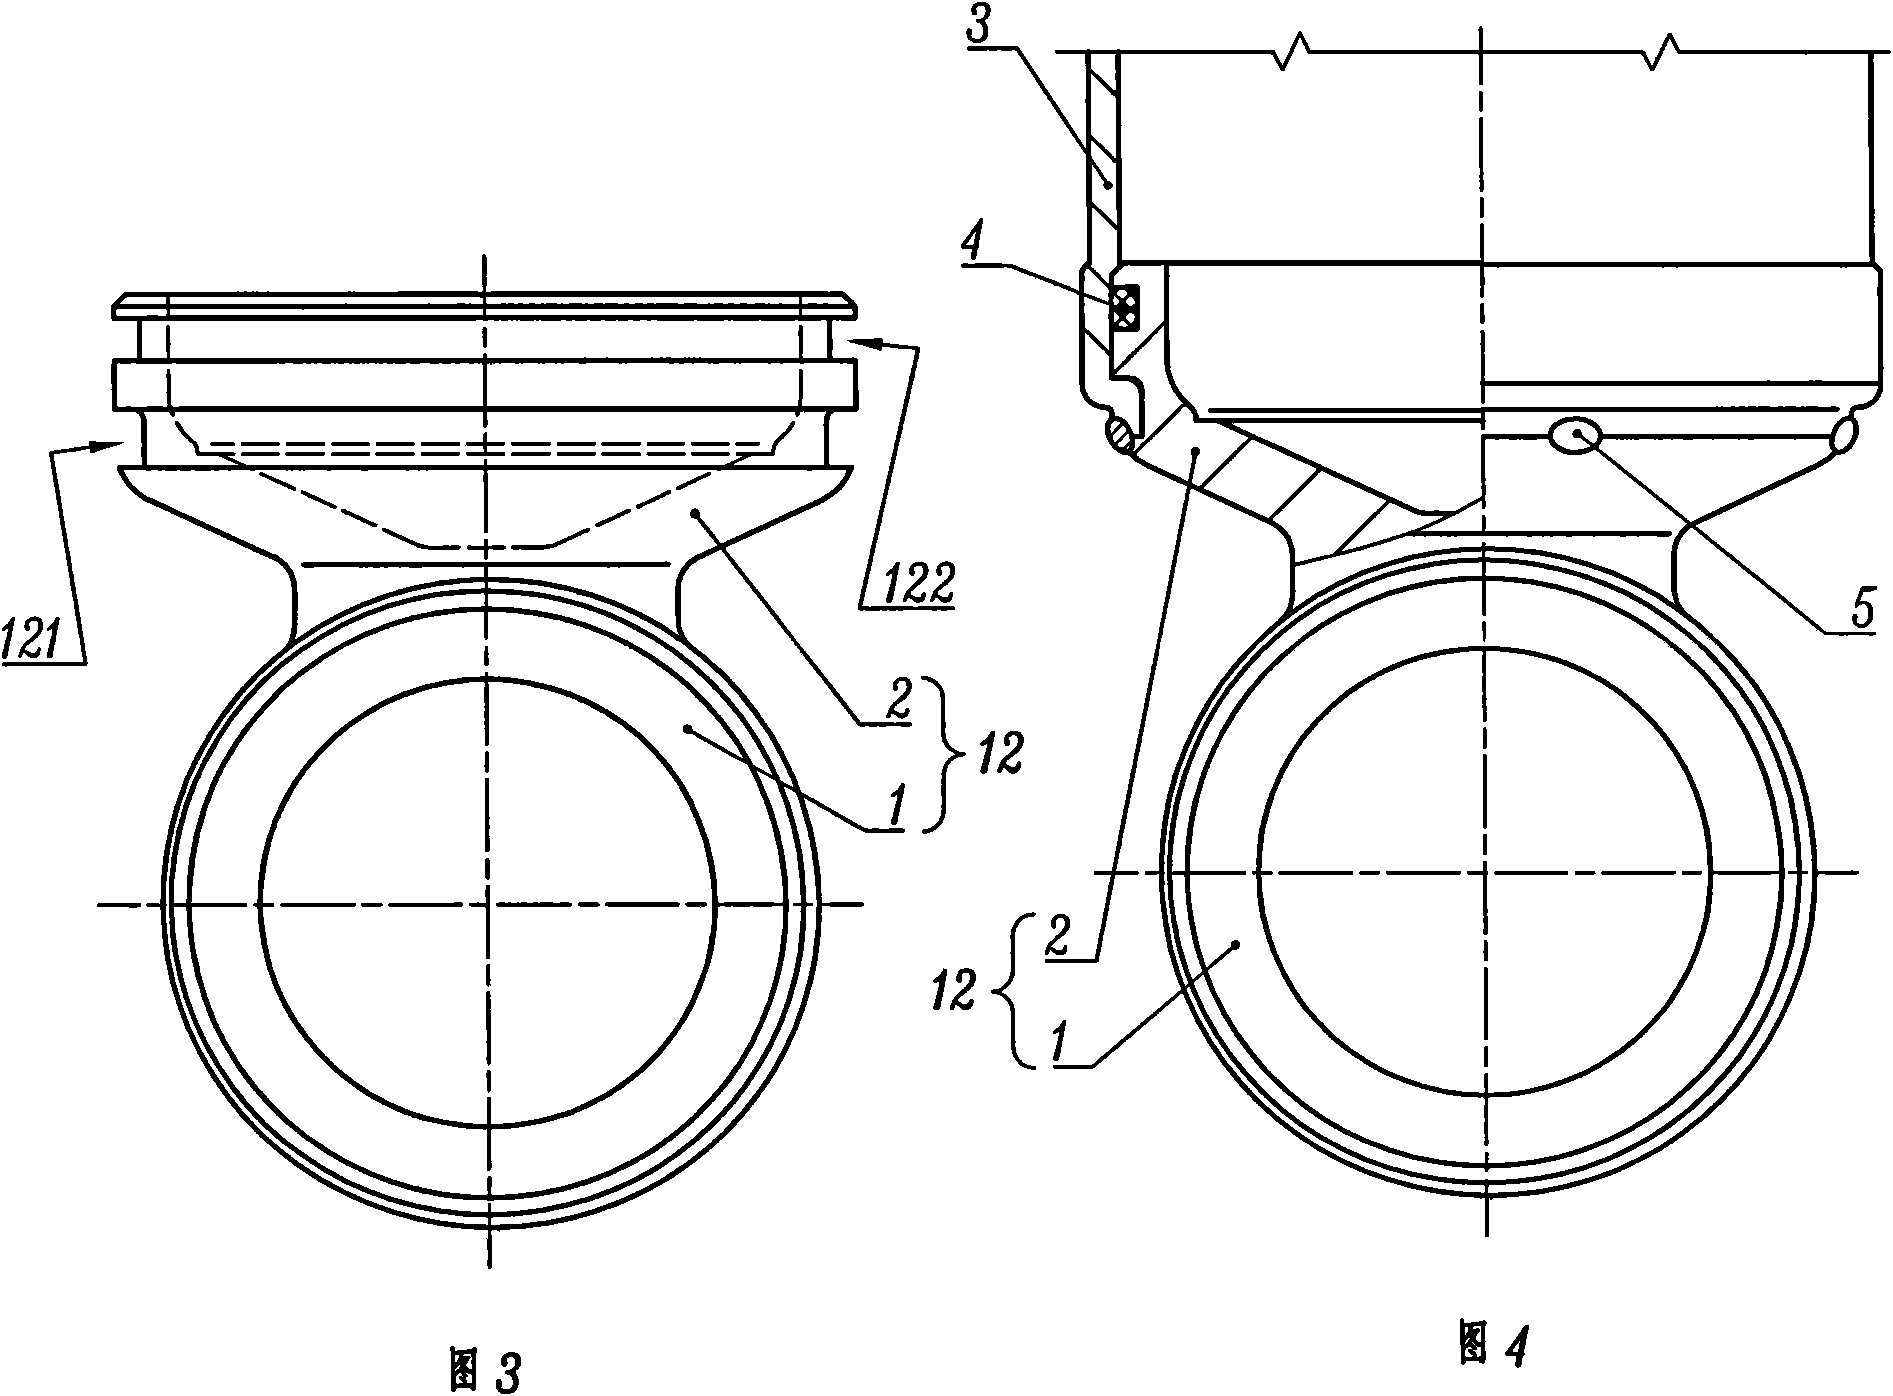 Outer cylinder barrel of shock absorber